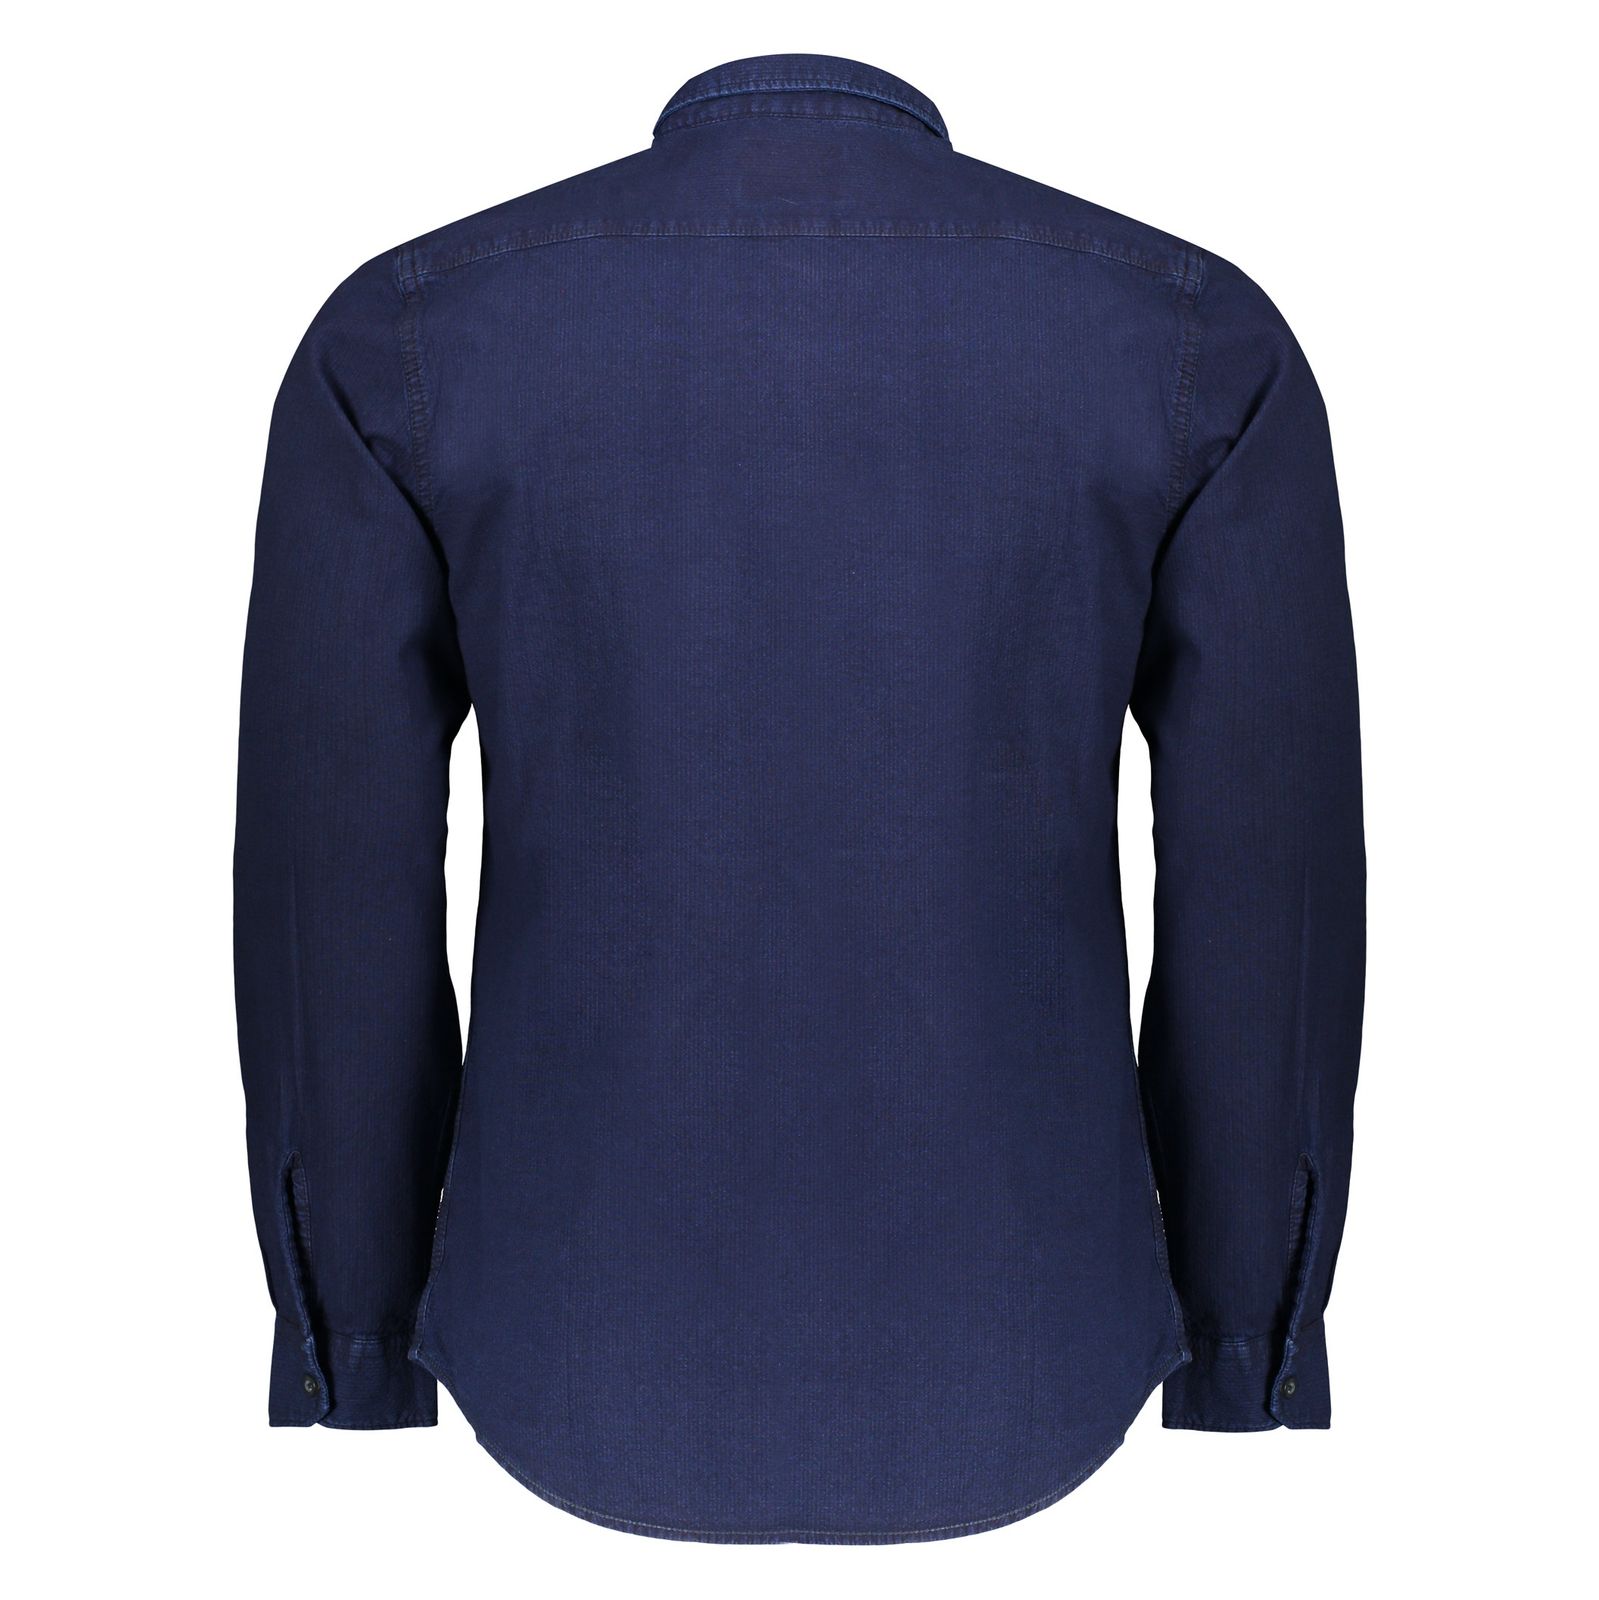 پیراهن مردانه اسپرینگ فیلد مدل 0296201-12